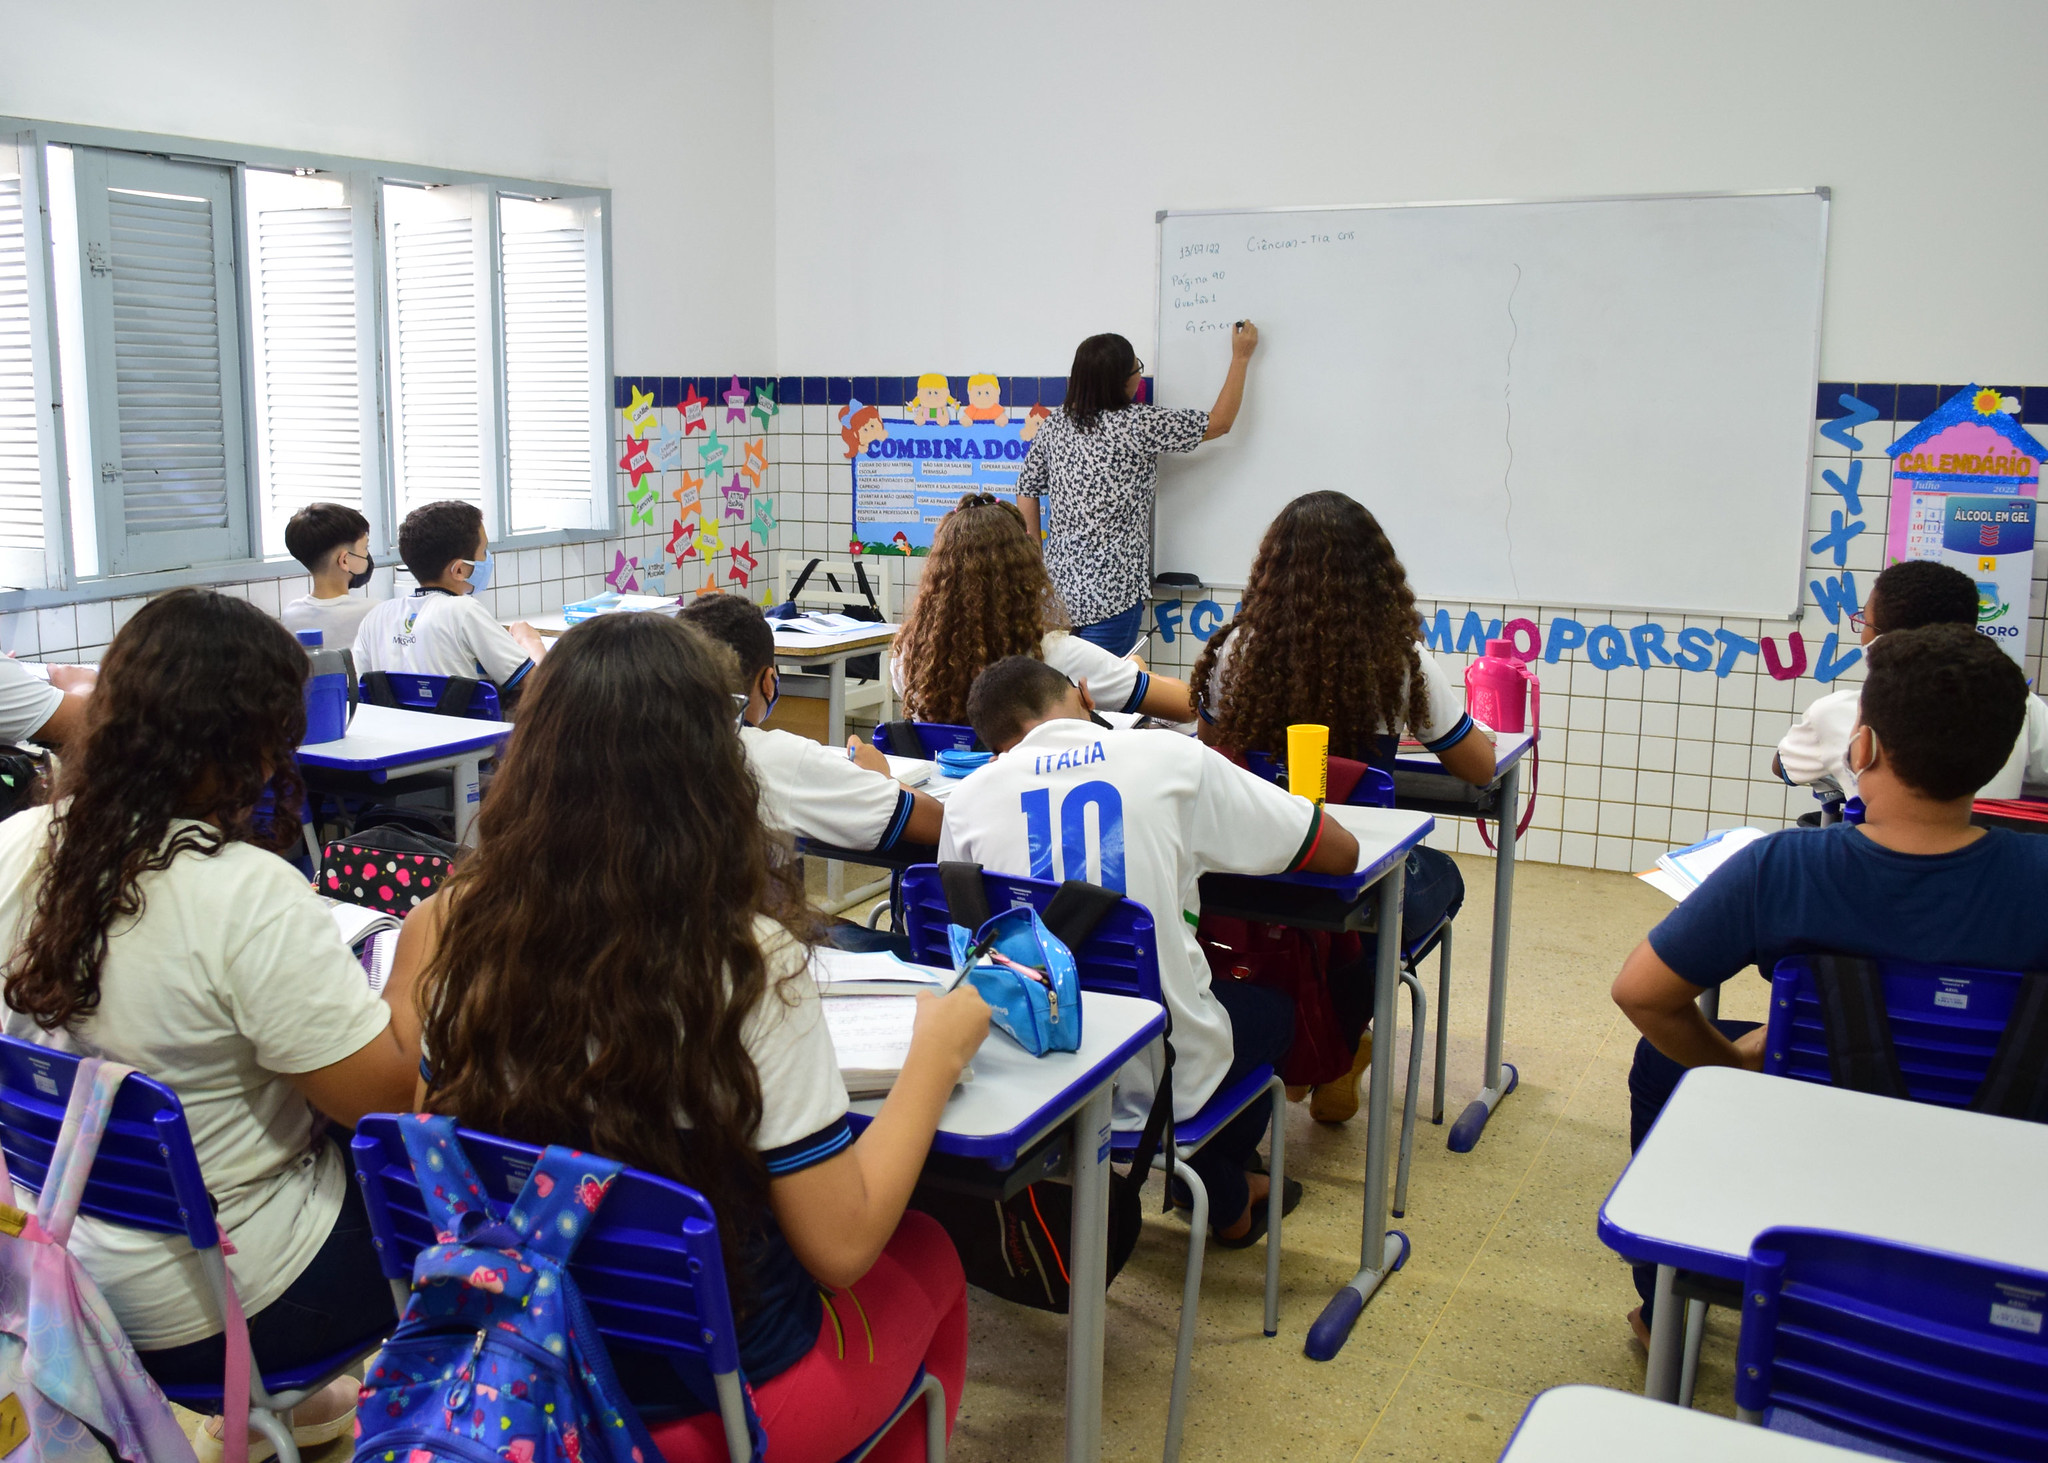 Prefeitura de Mossoró publica 14ª convocação de professores e supervisores aprovados em PSS